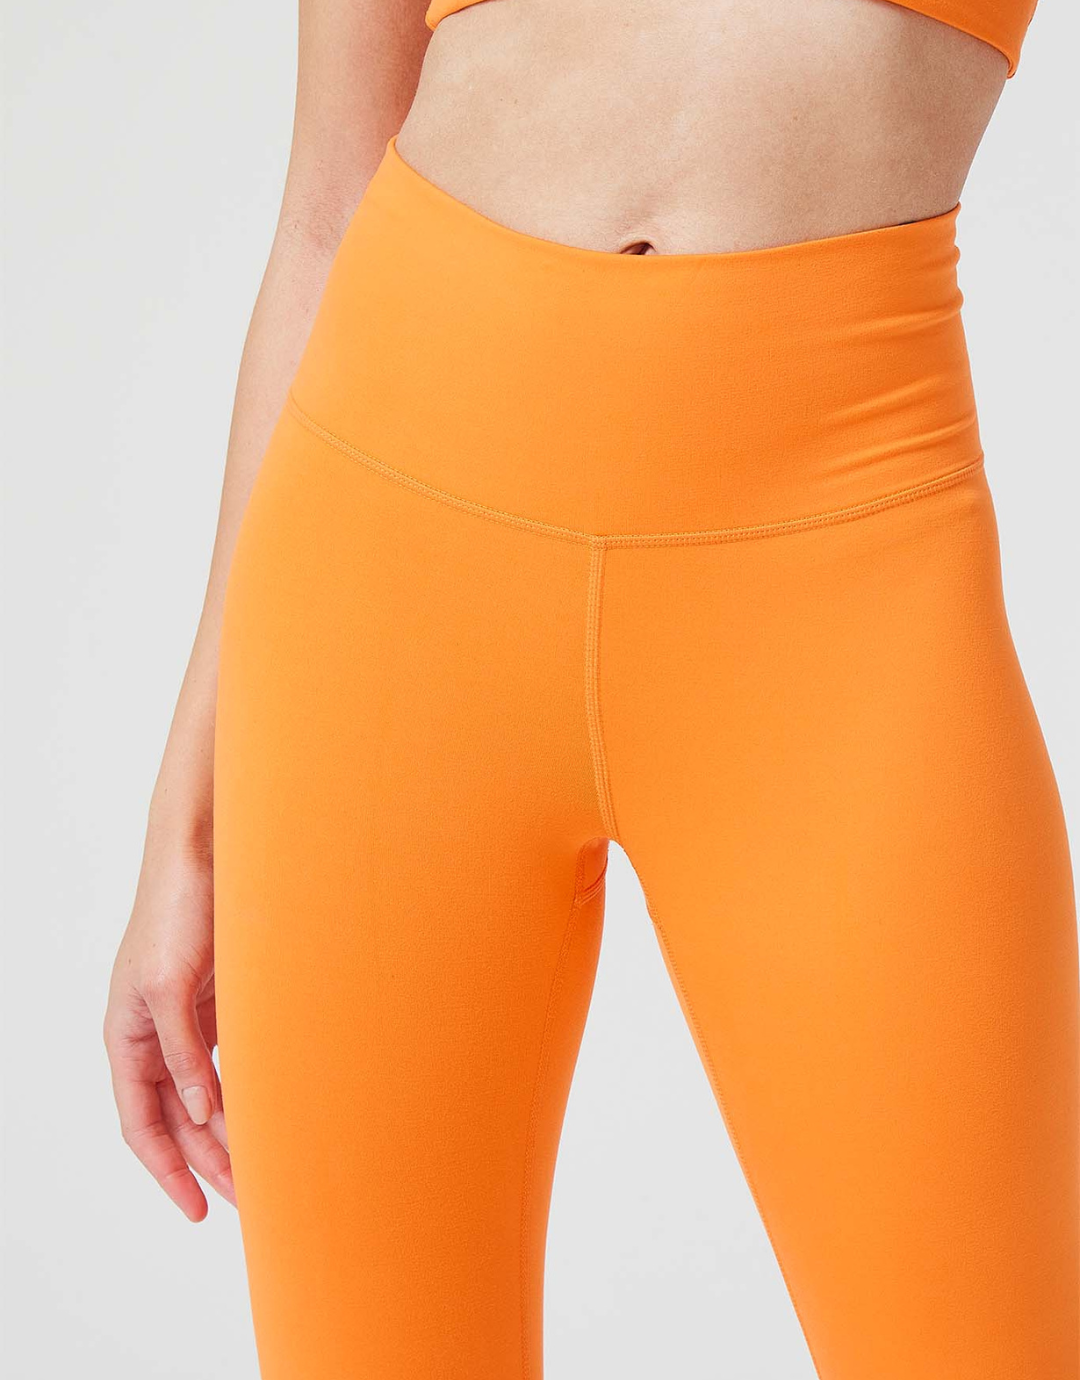 Tangerine leggings size xl - Gem